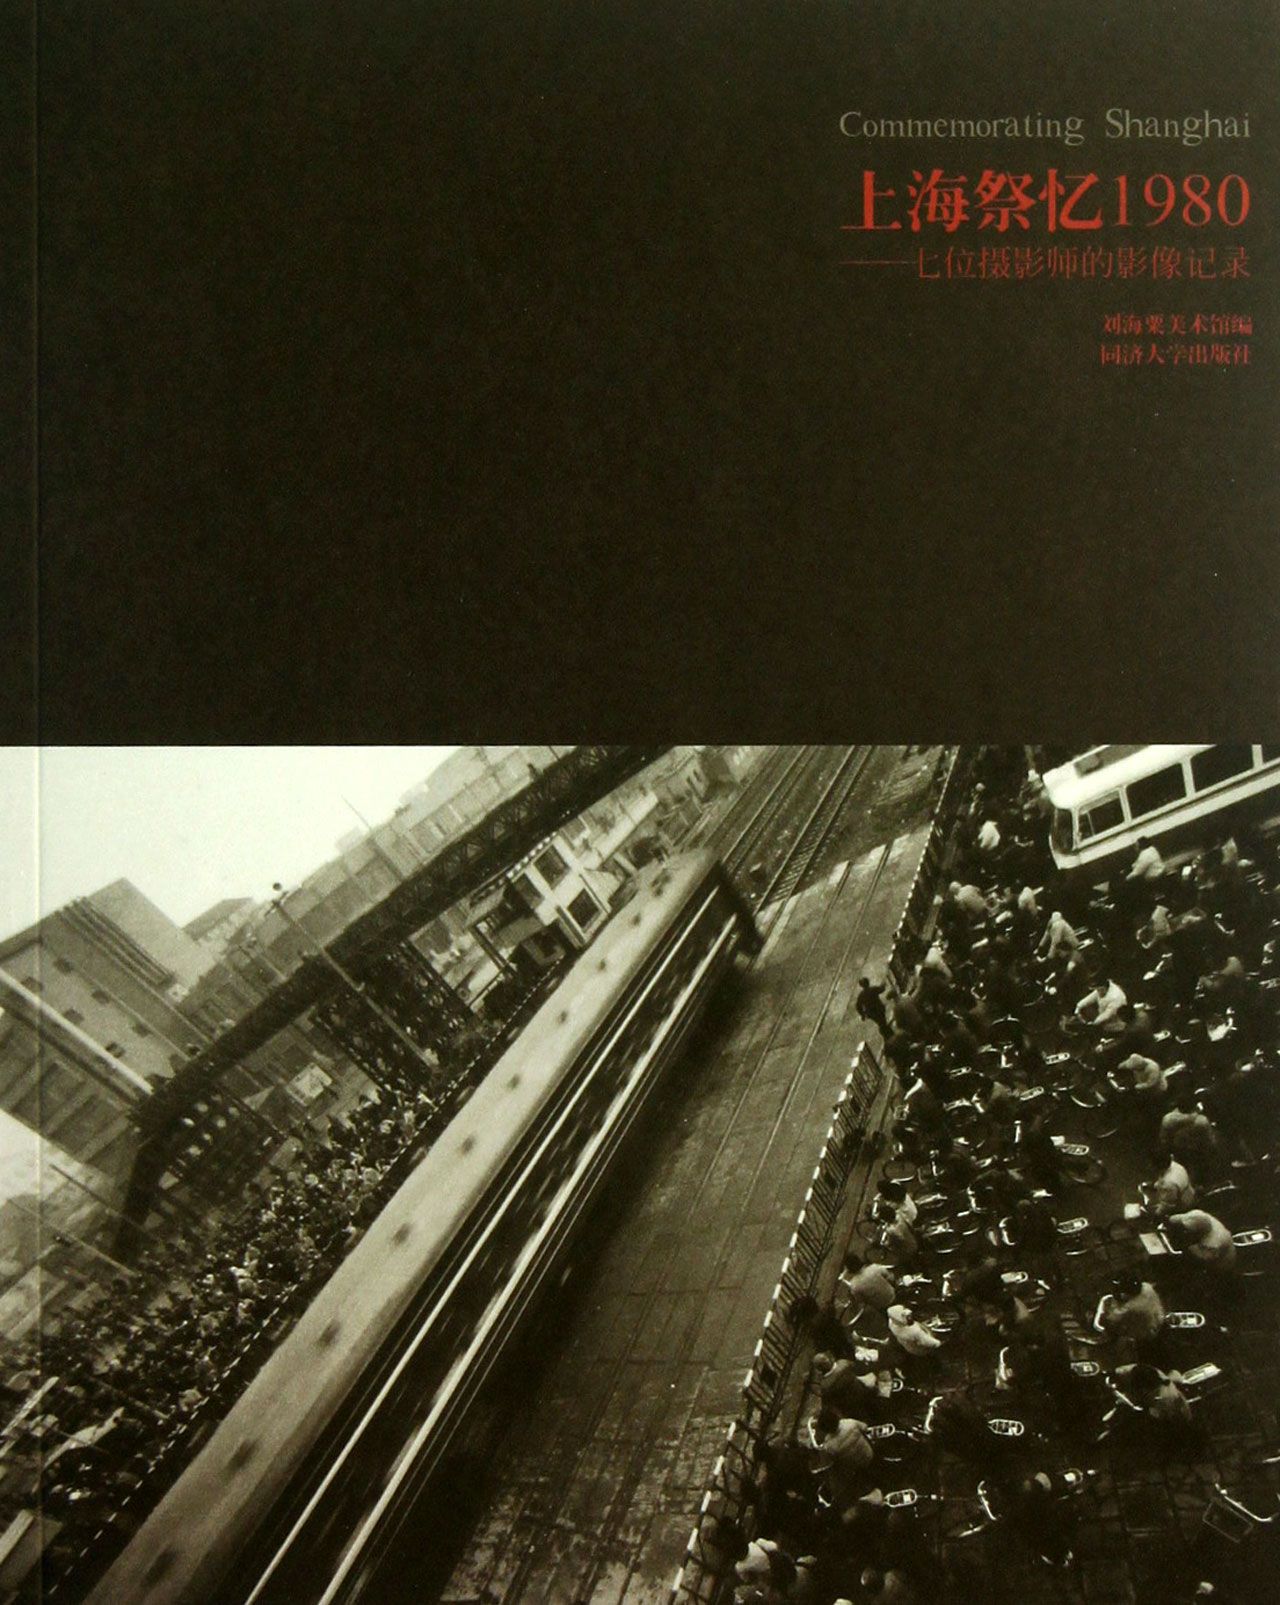 包邮 上海祭忆1980--七位摄影师的影像记录 刘海粟美术馆 9787560851488 同济大学